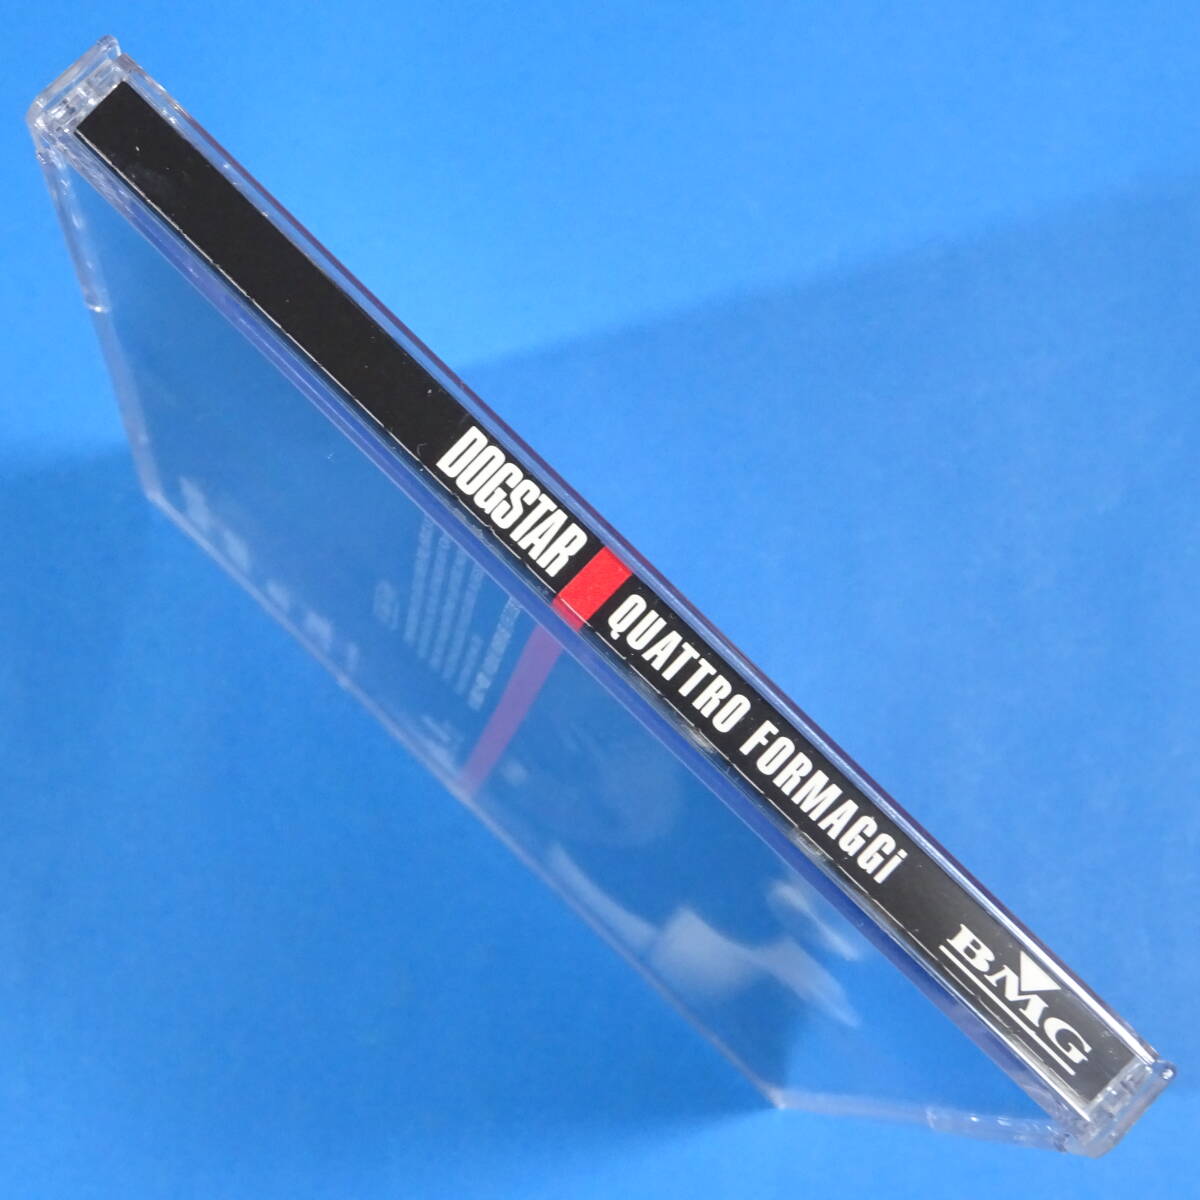 CD　ドッグスター / クアトロ・フォルマッジ　DOGSTAR / QUATTRO FORMAGGI　1996年　日本盤　ロック　4曲入り　ベース:キアヌ・リーブス_画像3